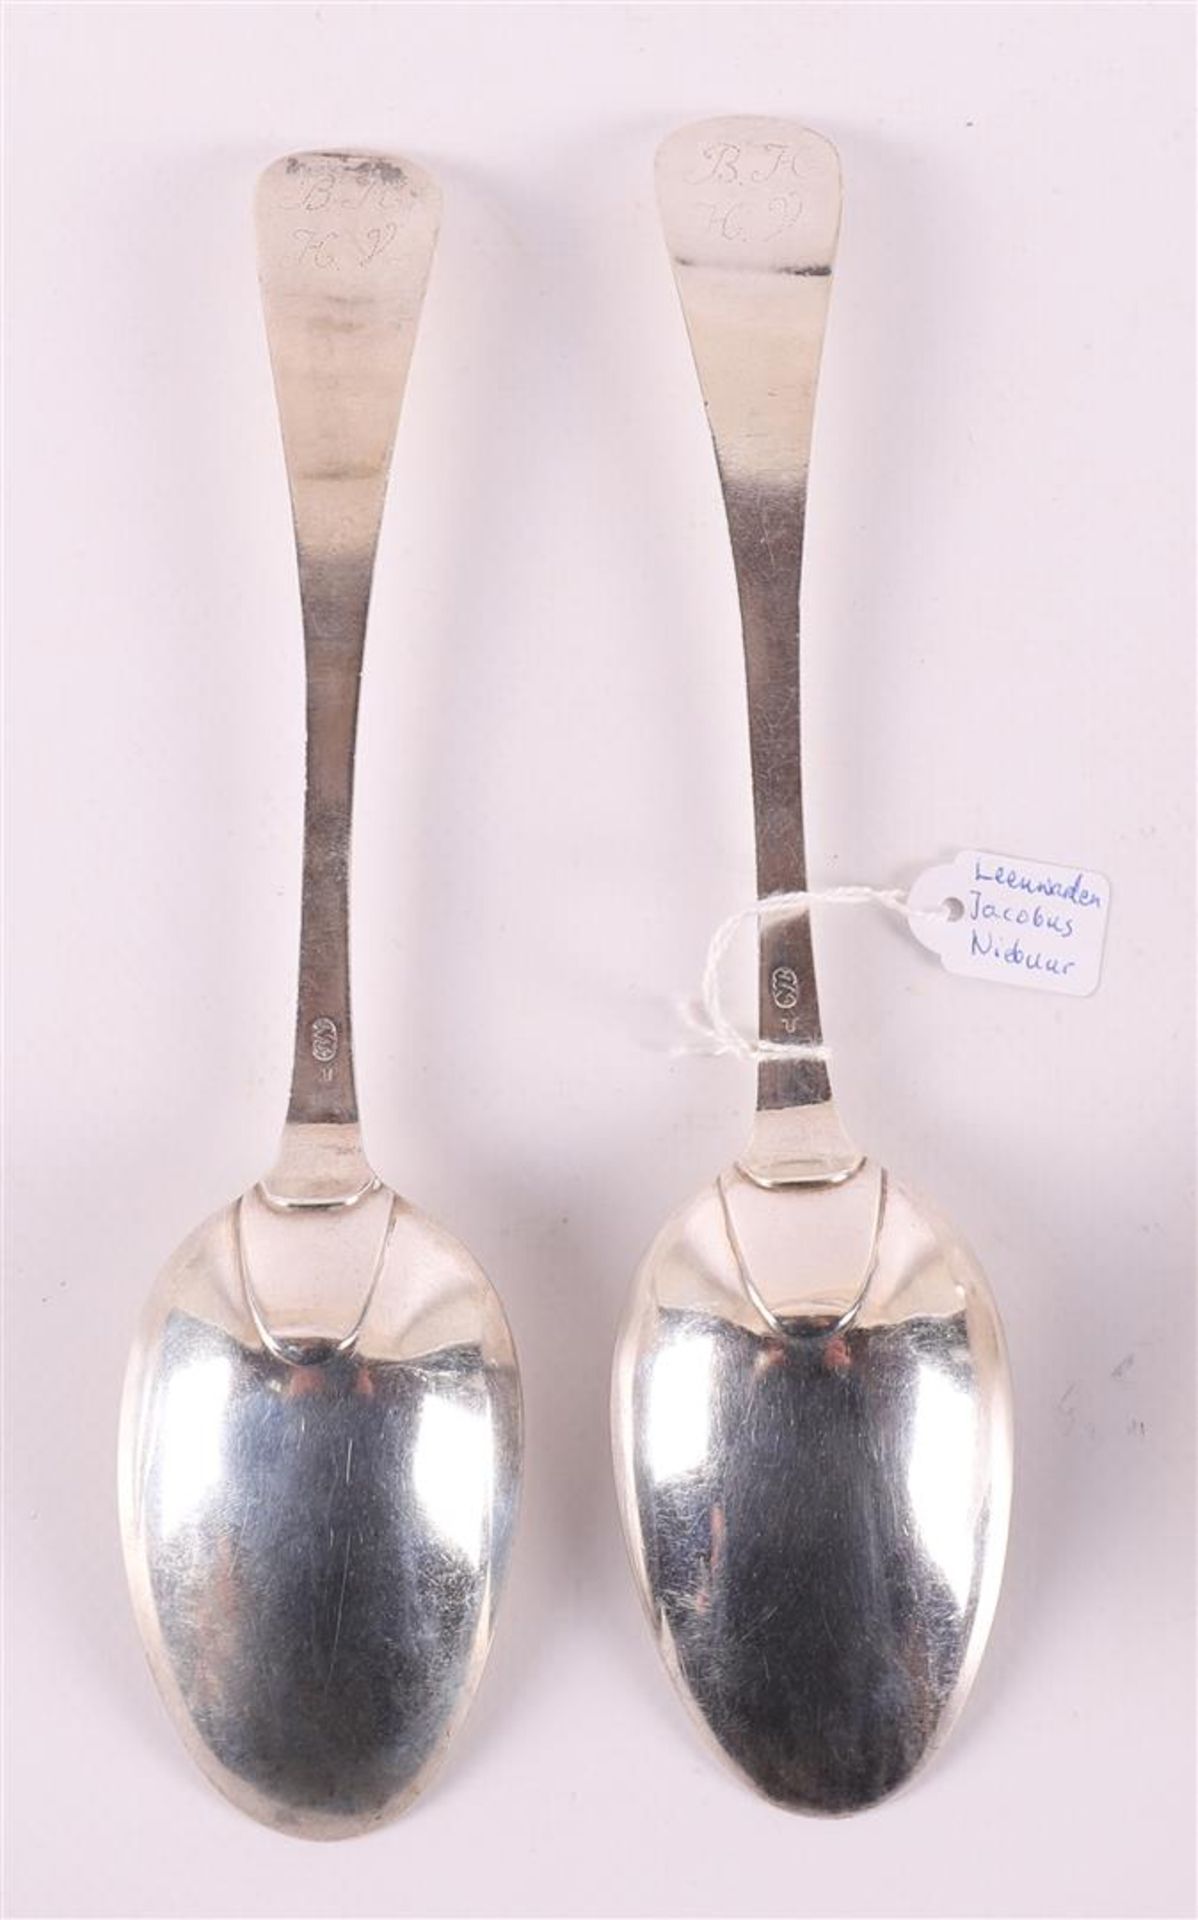 Four first grade content 925/1000 silver spoons, Friesland, Leeuwarden, - Bild 4 aus 7